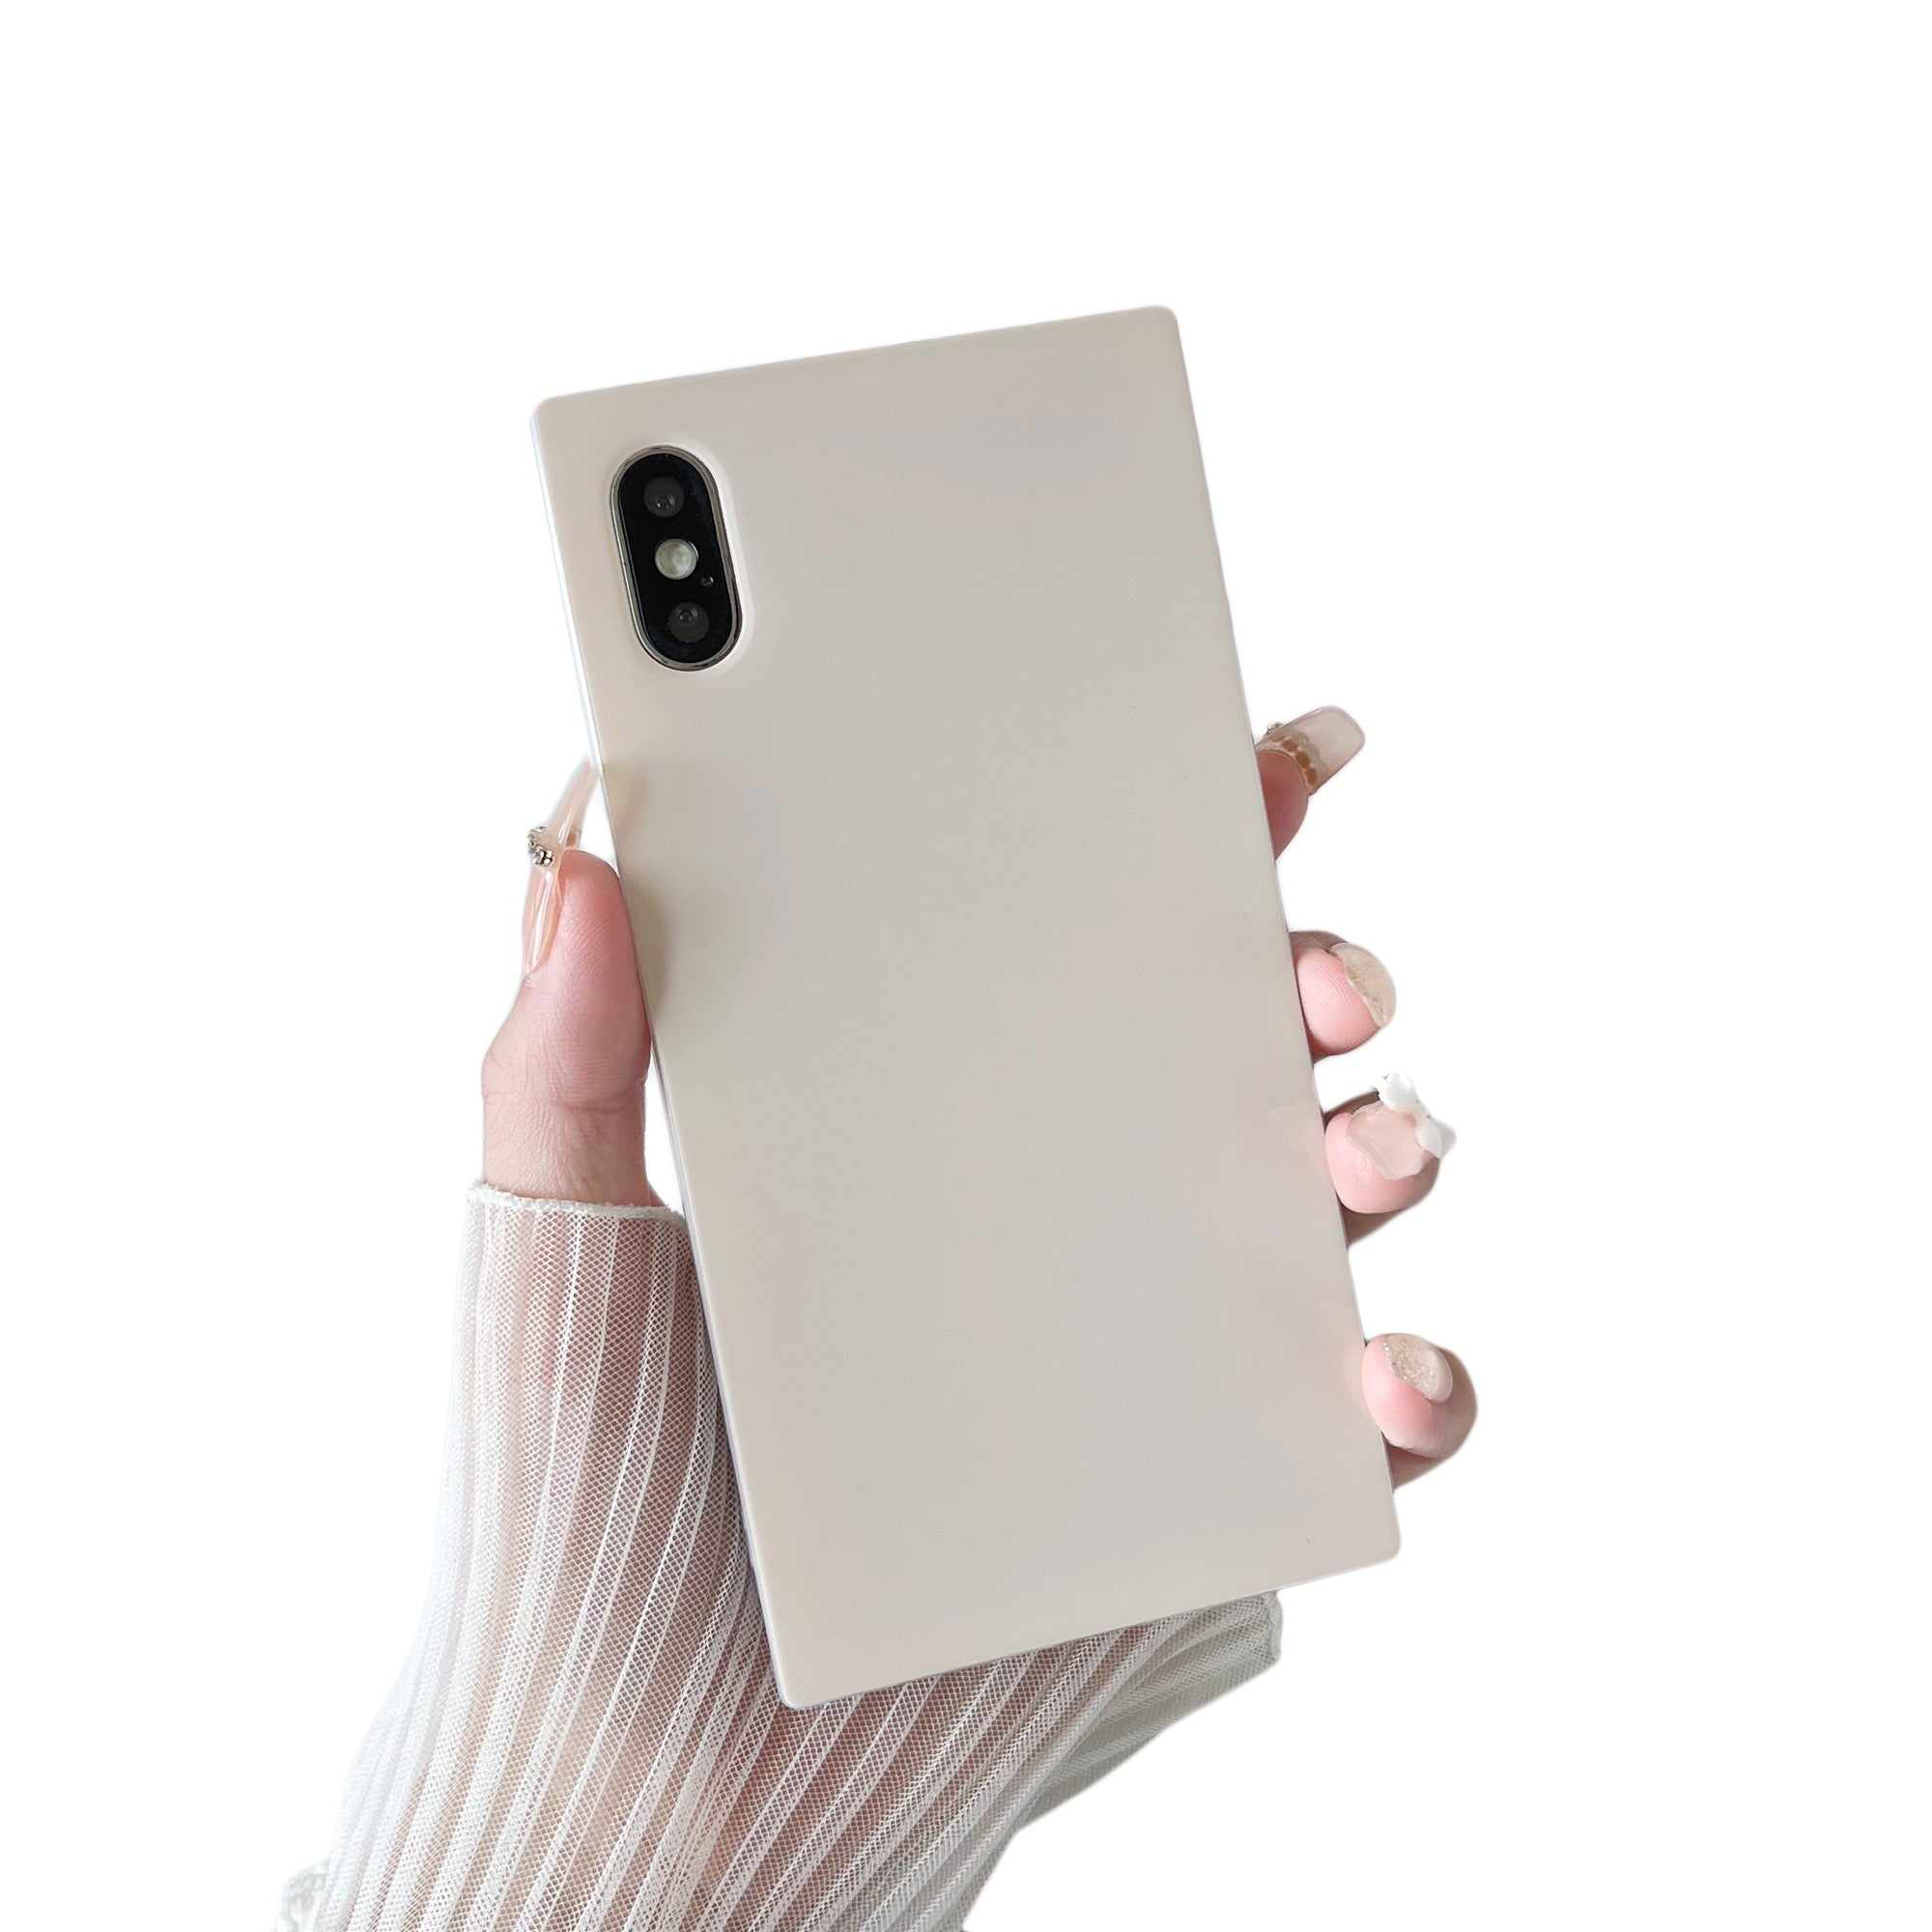 iPhone XR Case Square Neutral Plain Color (Antique White)